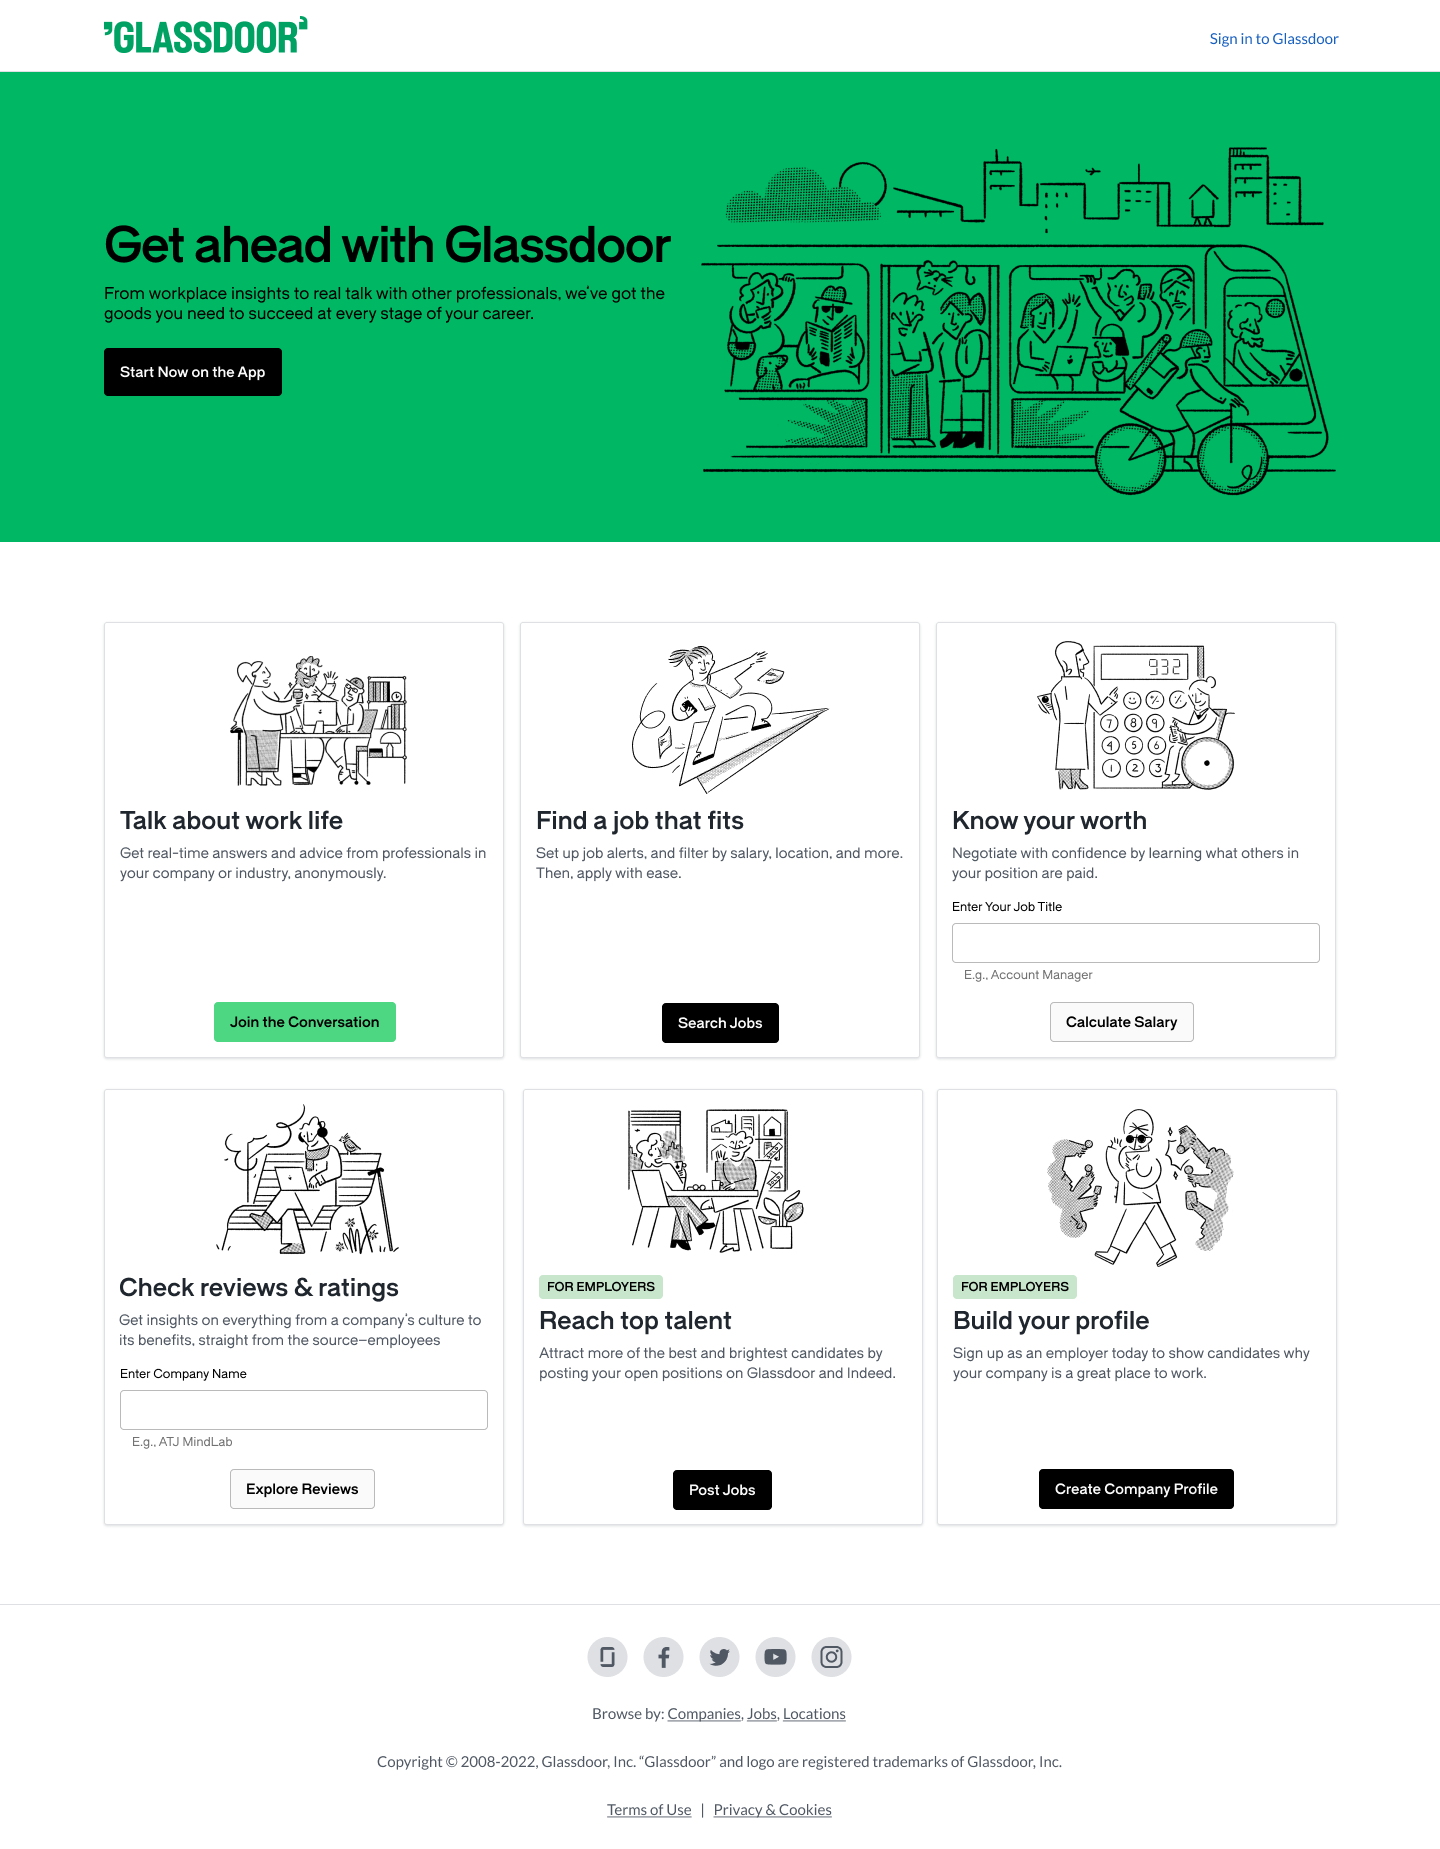 The redesigned Glassdoor website